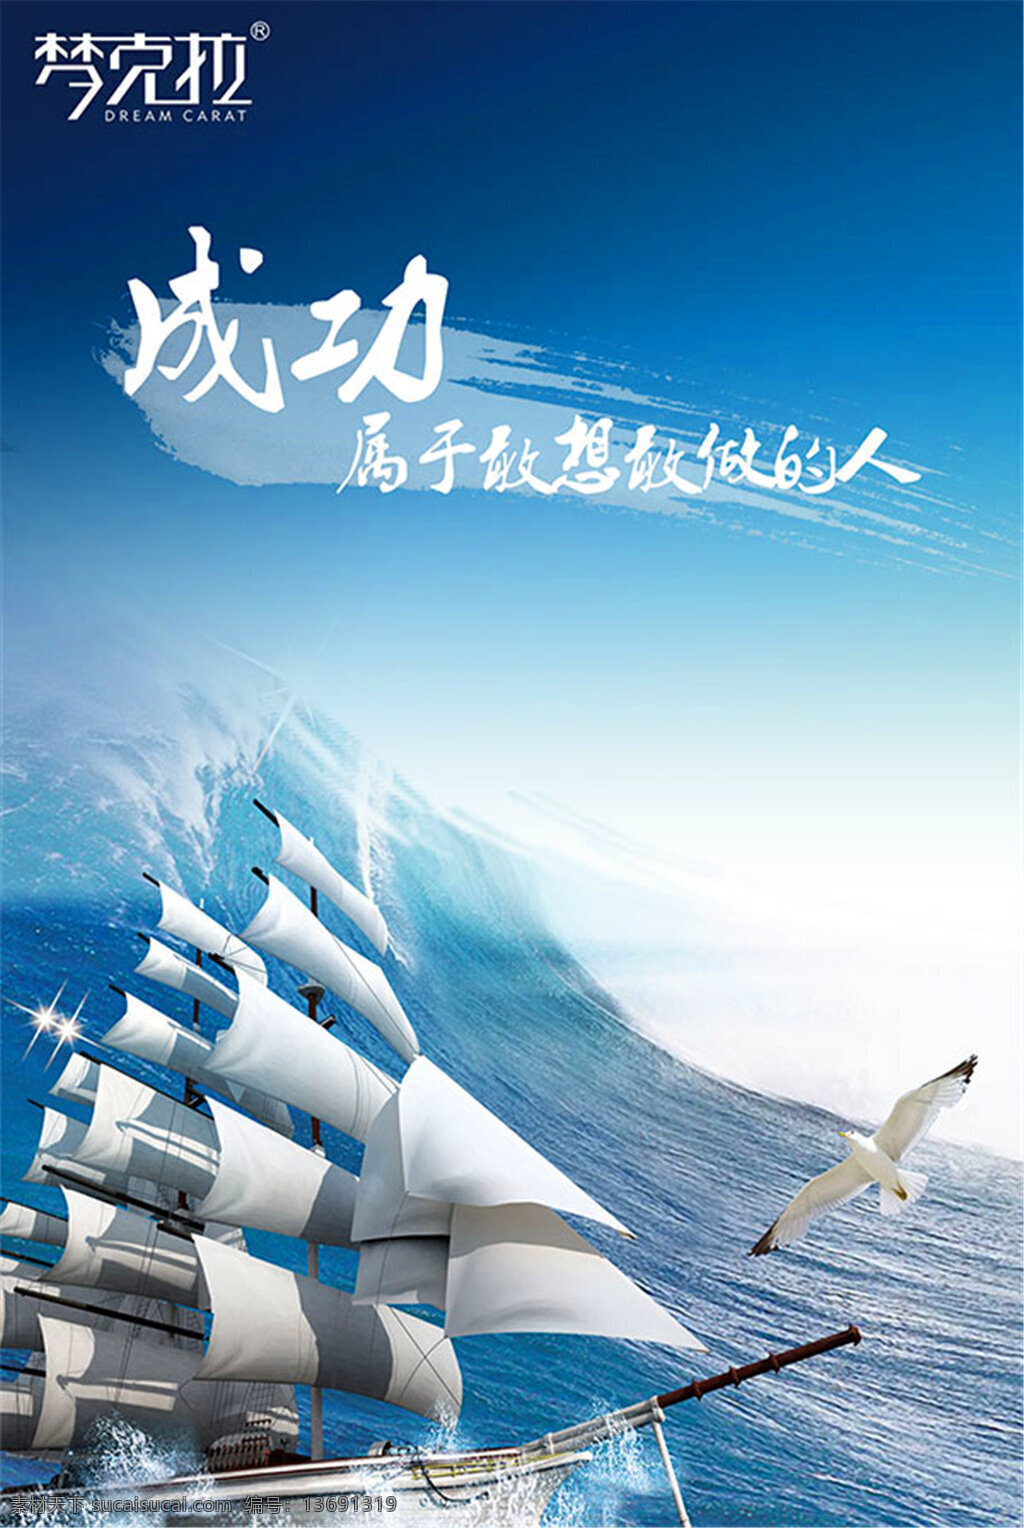 海洋 风 企业 文化 企业文化海报 企业文化展板 大海 海鸥 帆船 公司文化 发展理念 成功 属于 感想 敢 做 人